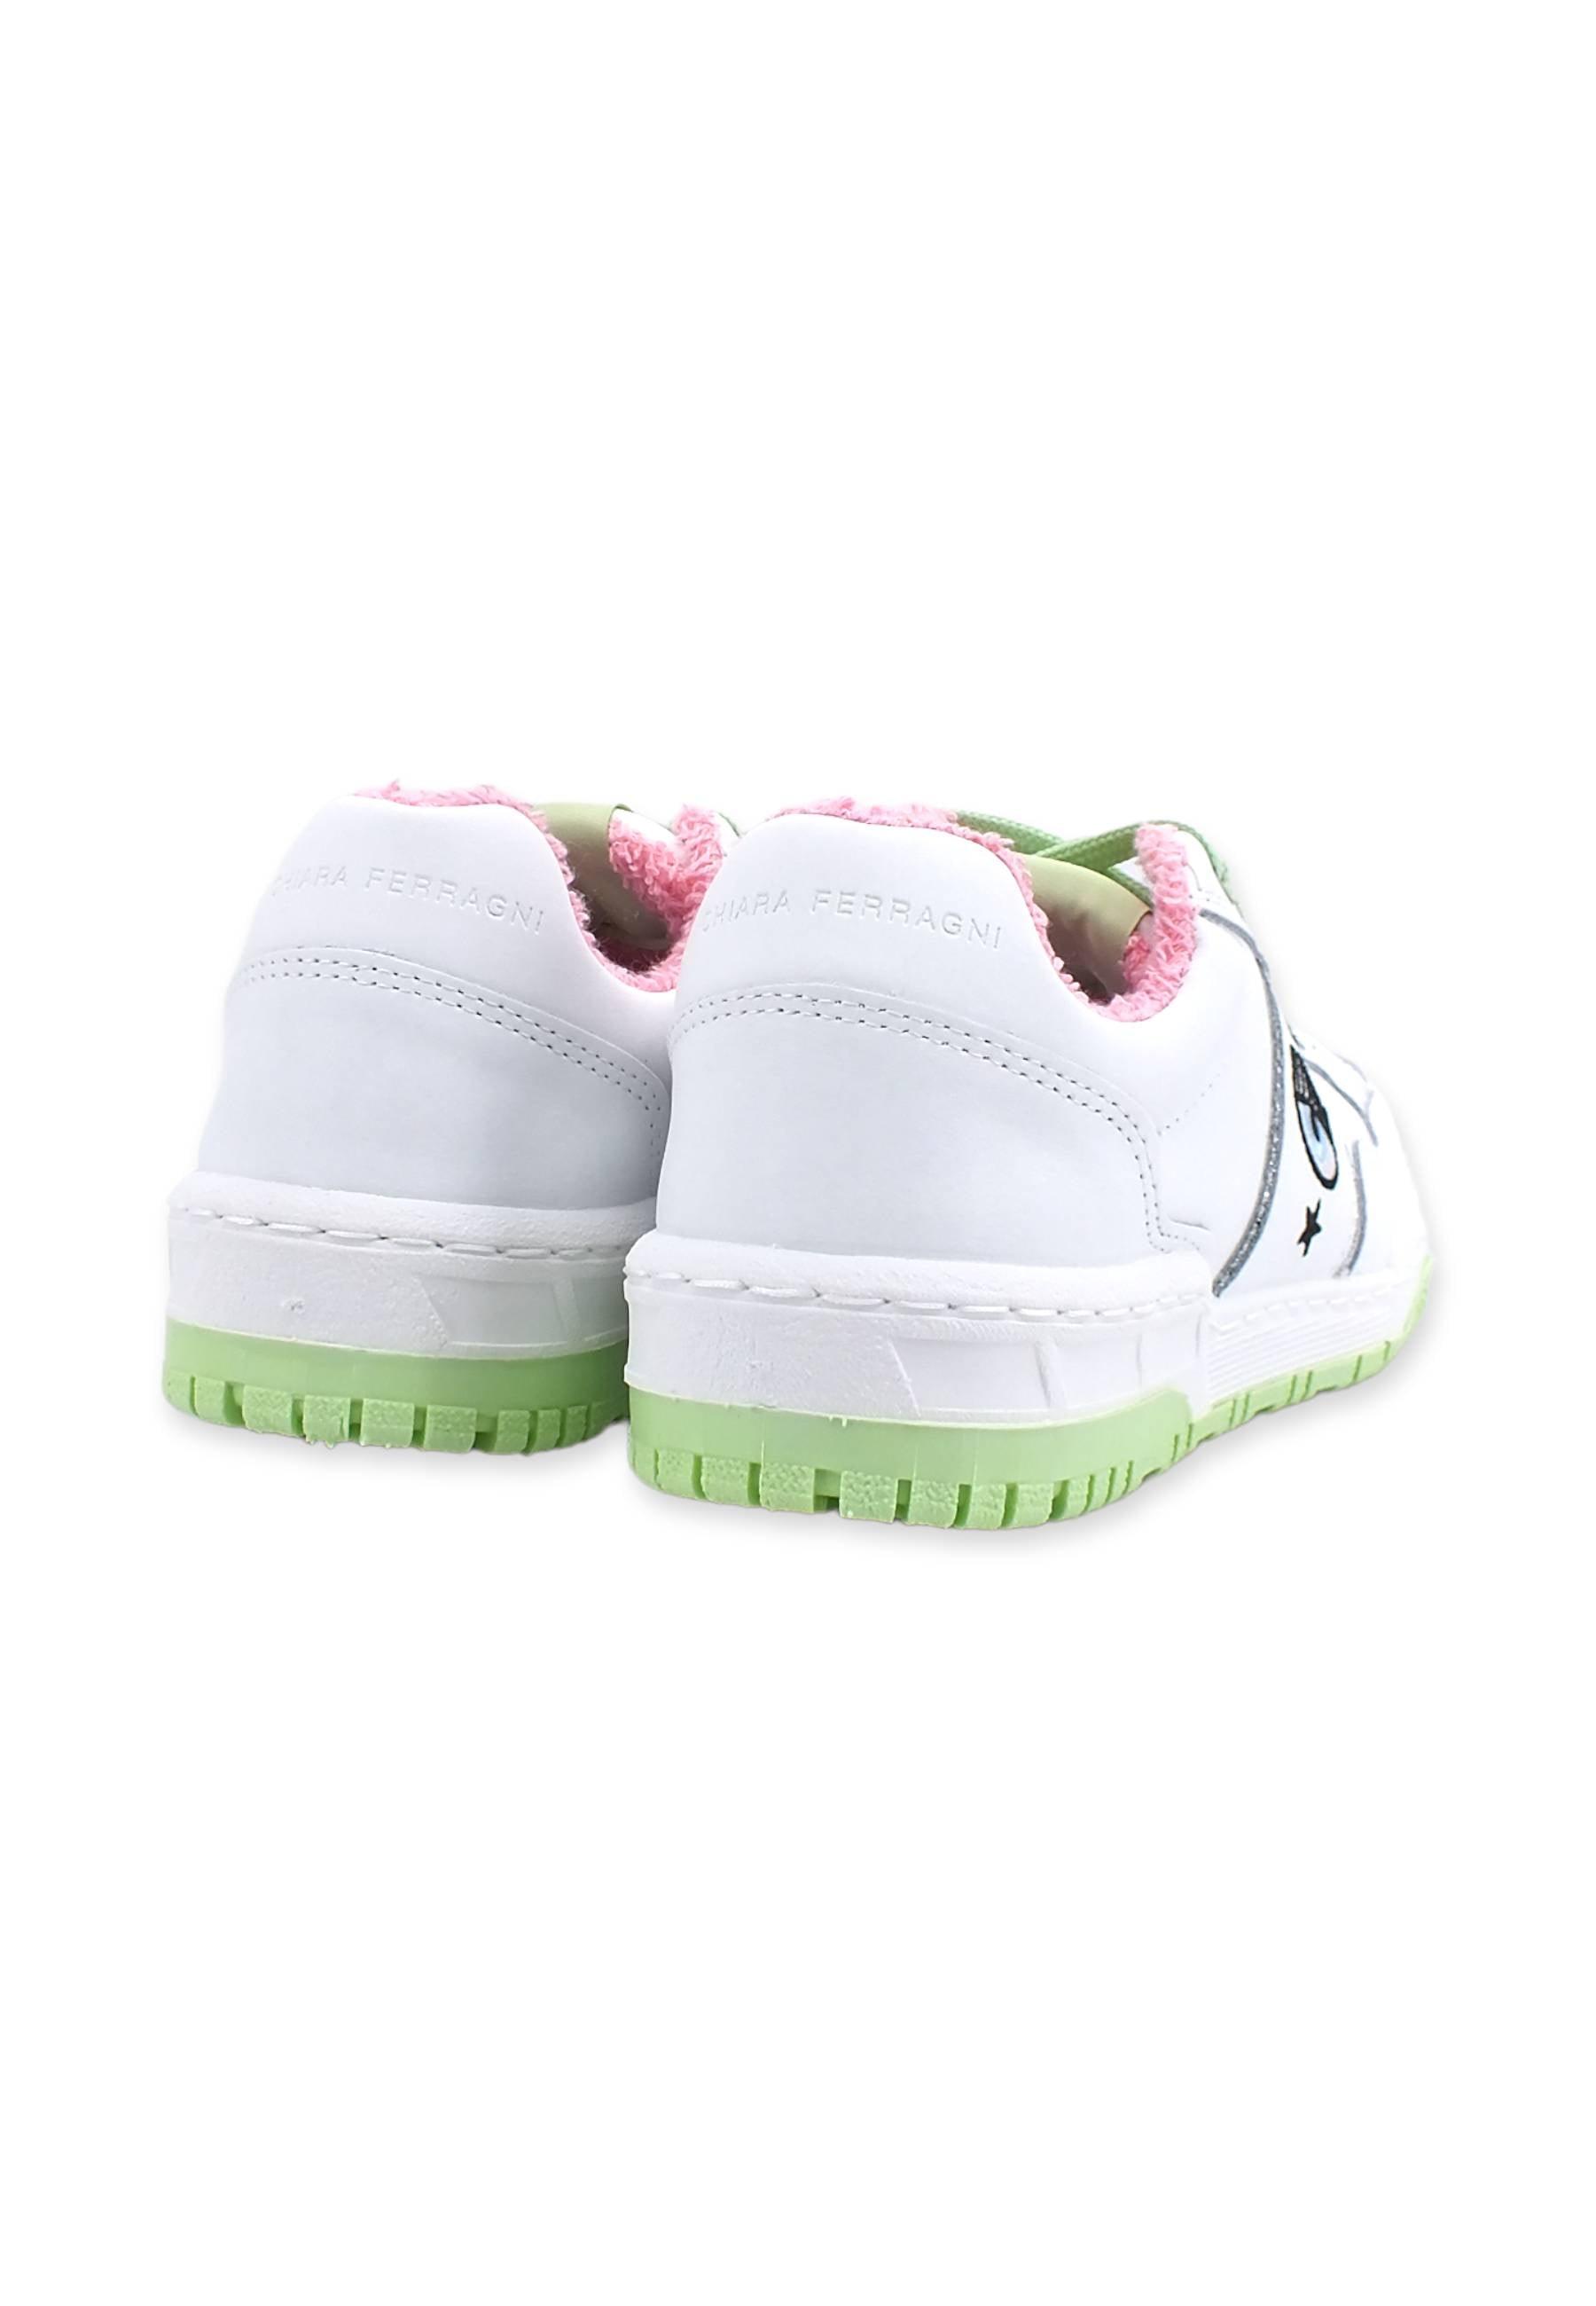 CHIARA FERRAGNI Sneaker Low Donna White Light Green CF3003-159 - Sandrini Calzature e Abbigliamento